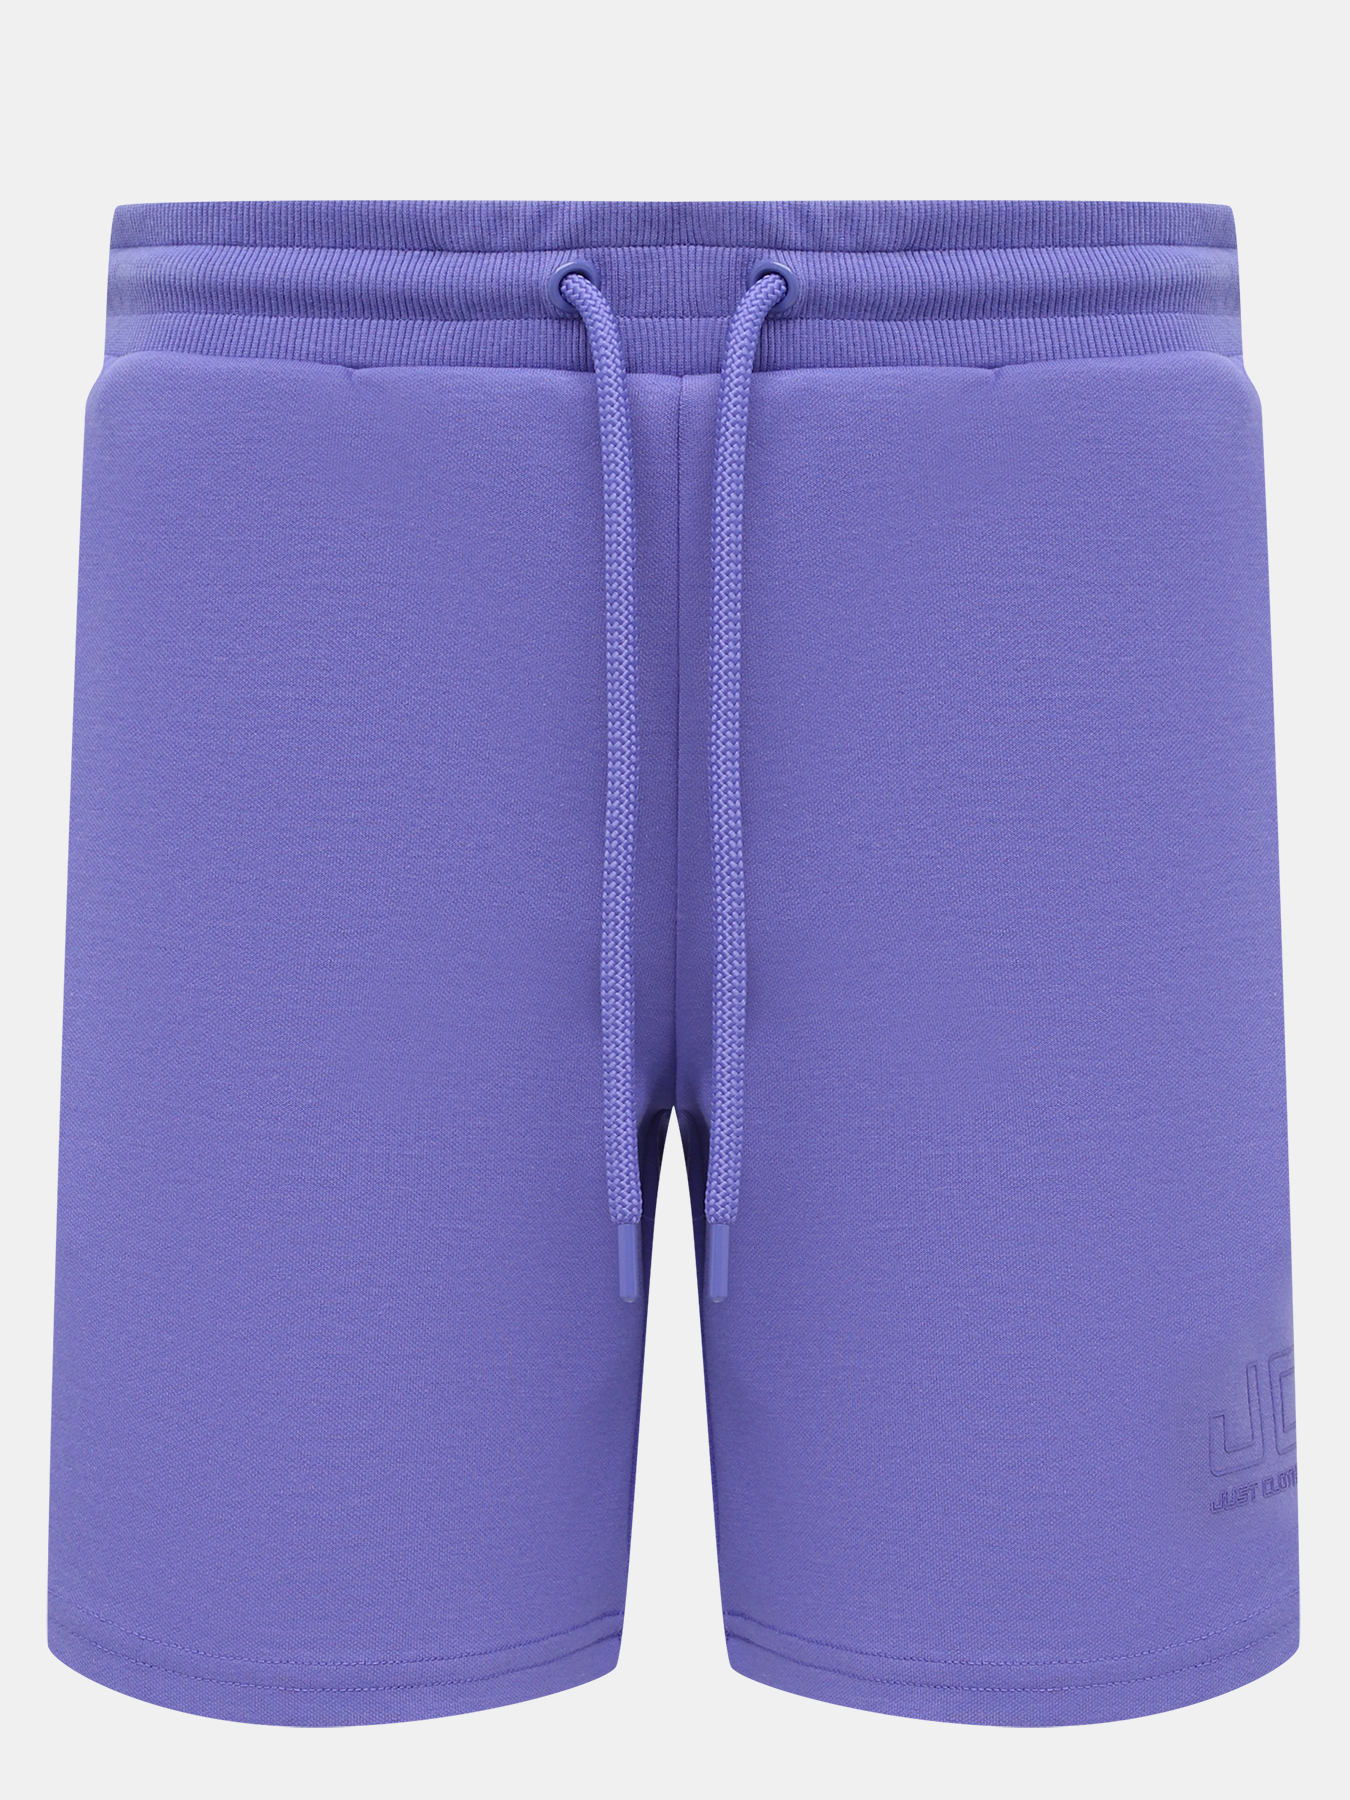 Спортивные шорты женские Just Clothes 453720 фиолетовые 50 RU